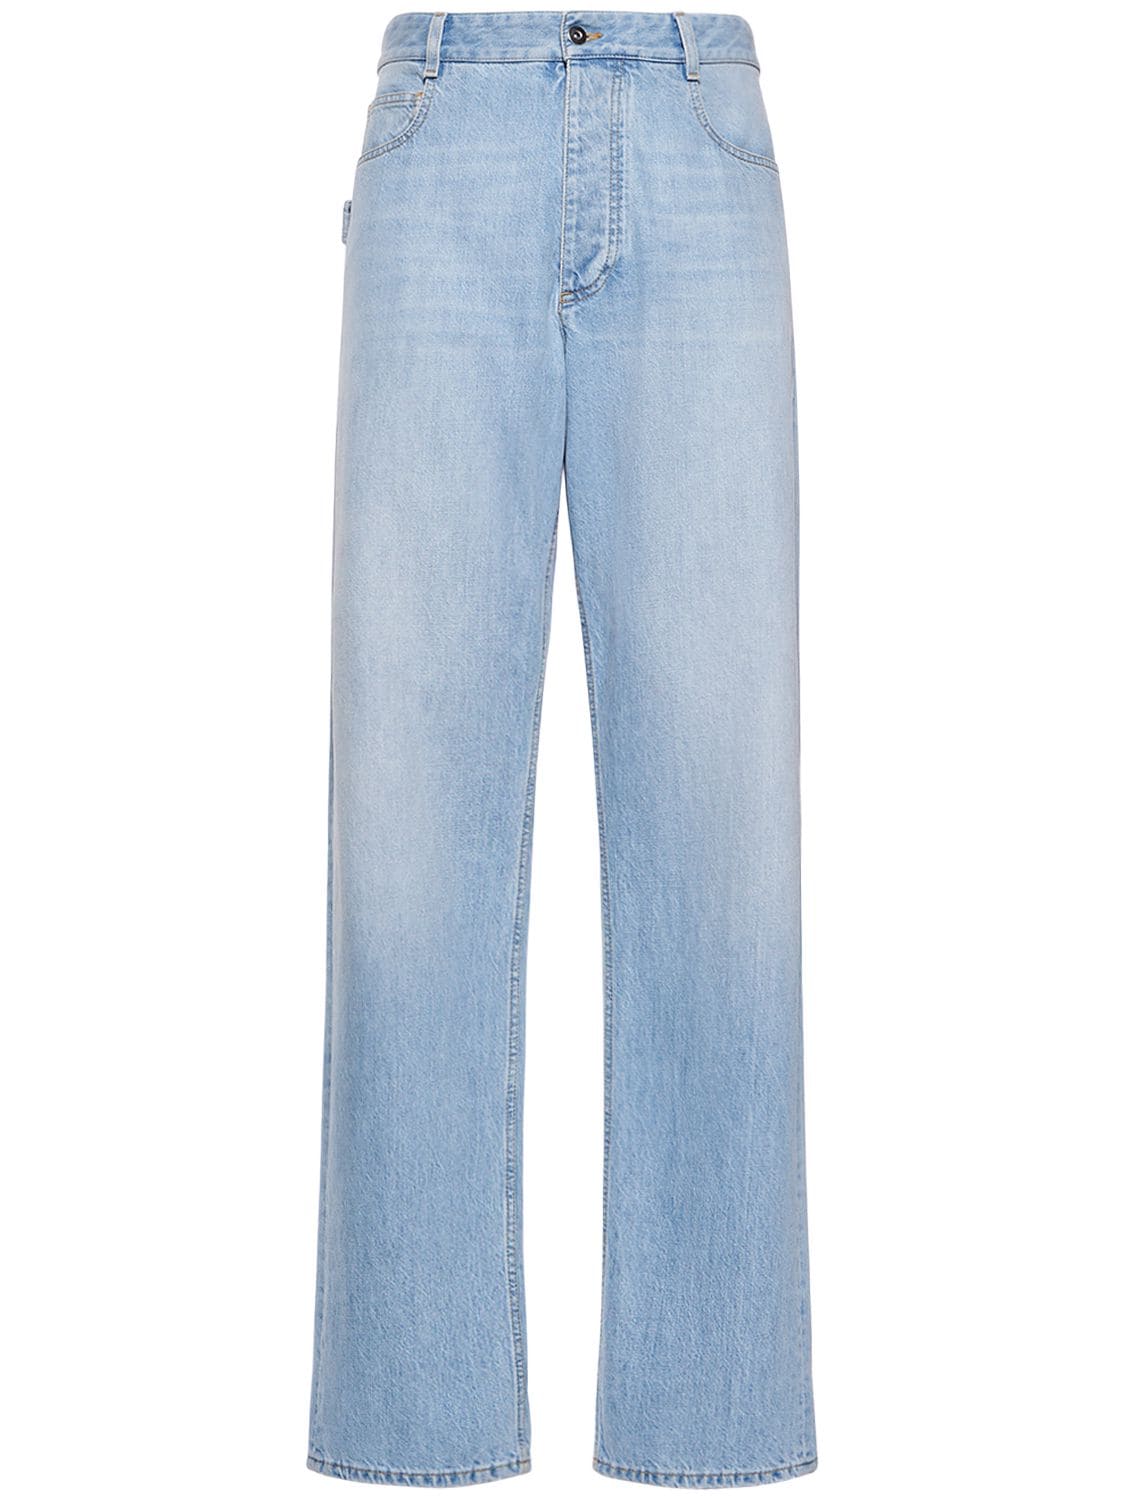 Vintage-jeans Aus Baumwolldenim Mit Weitem Bein - BOTTEGA VENETA - Modalova